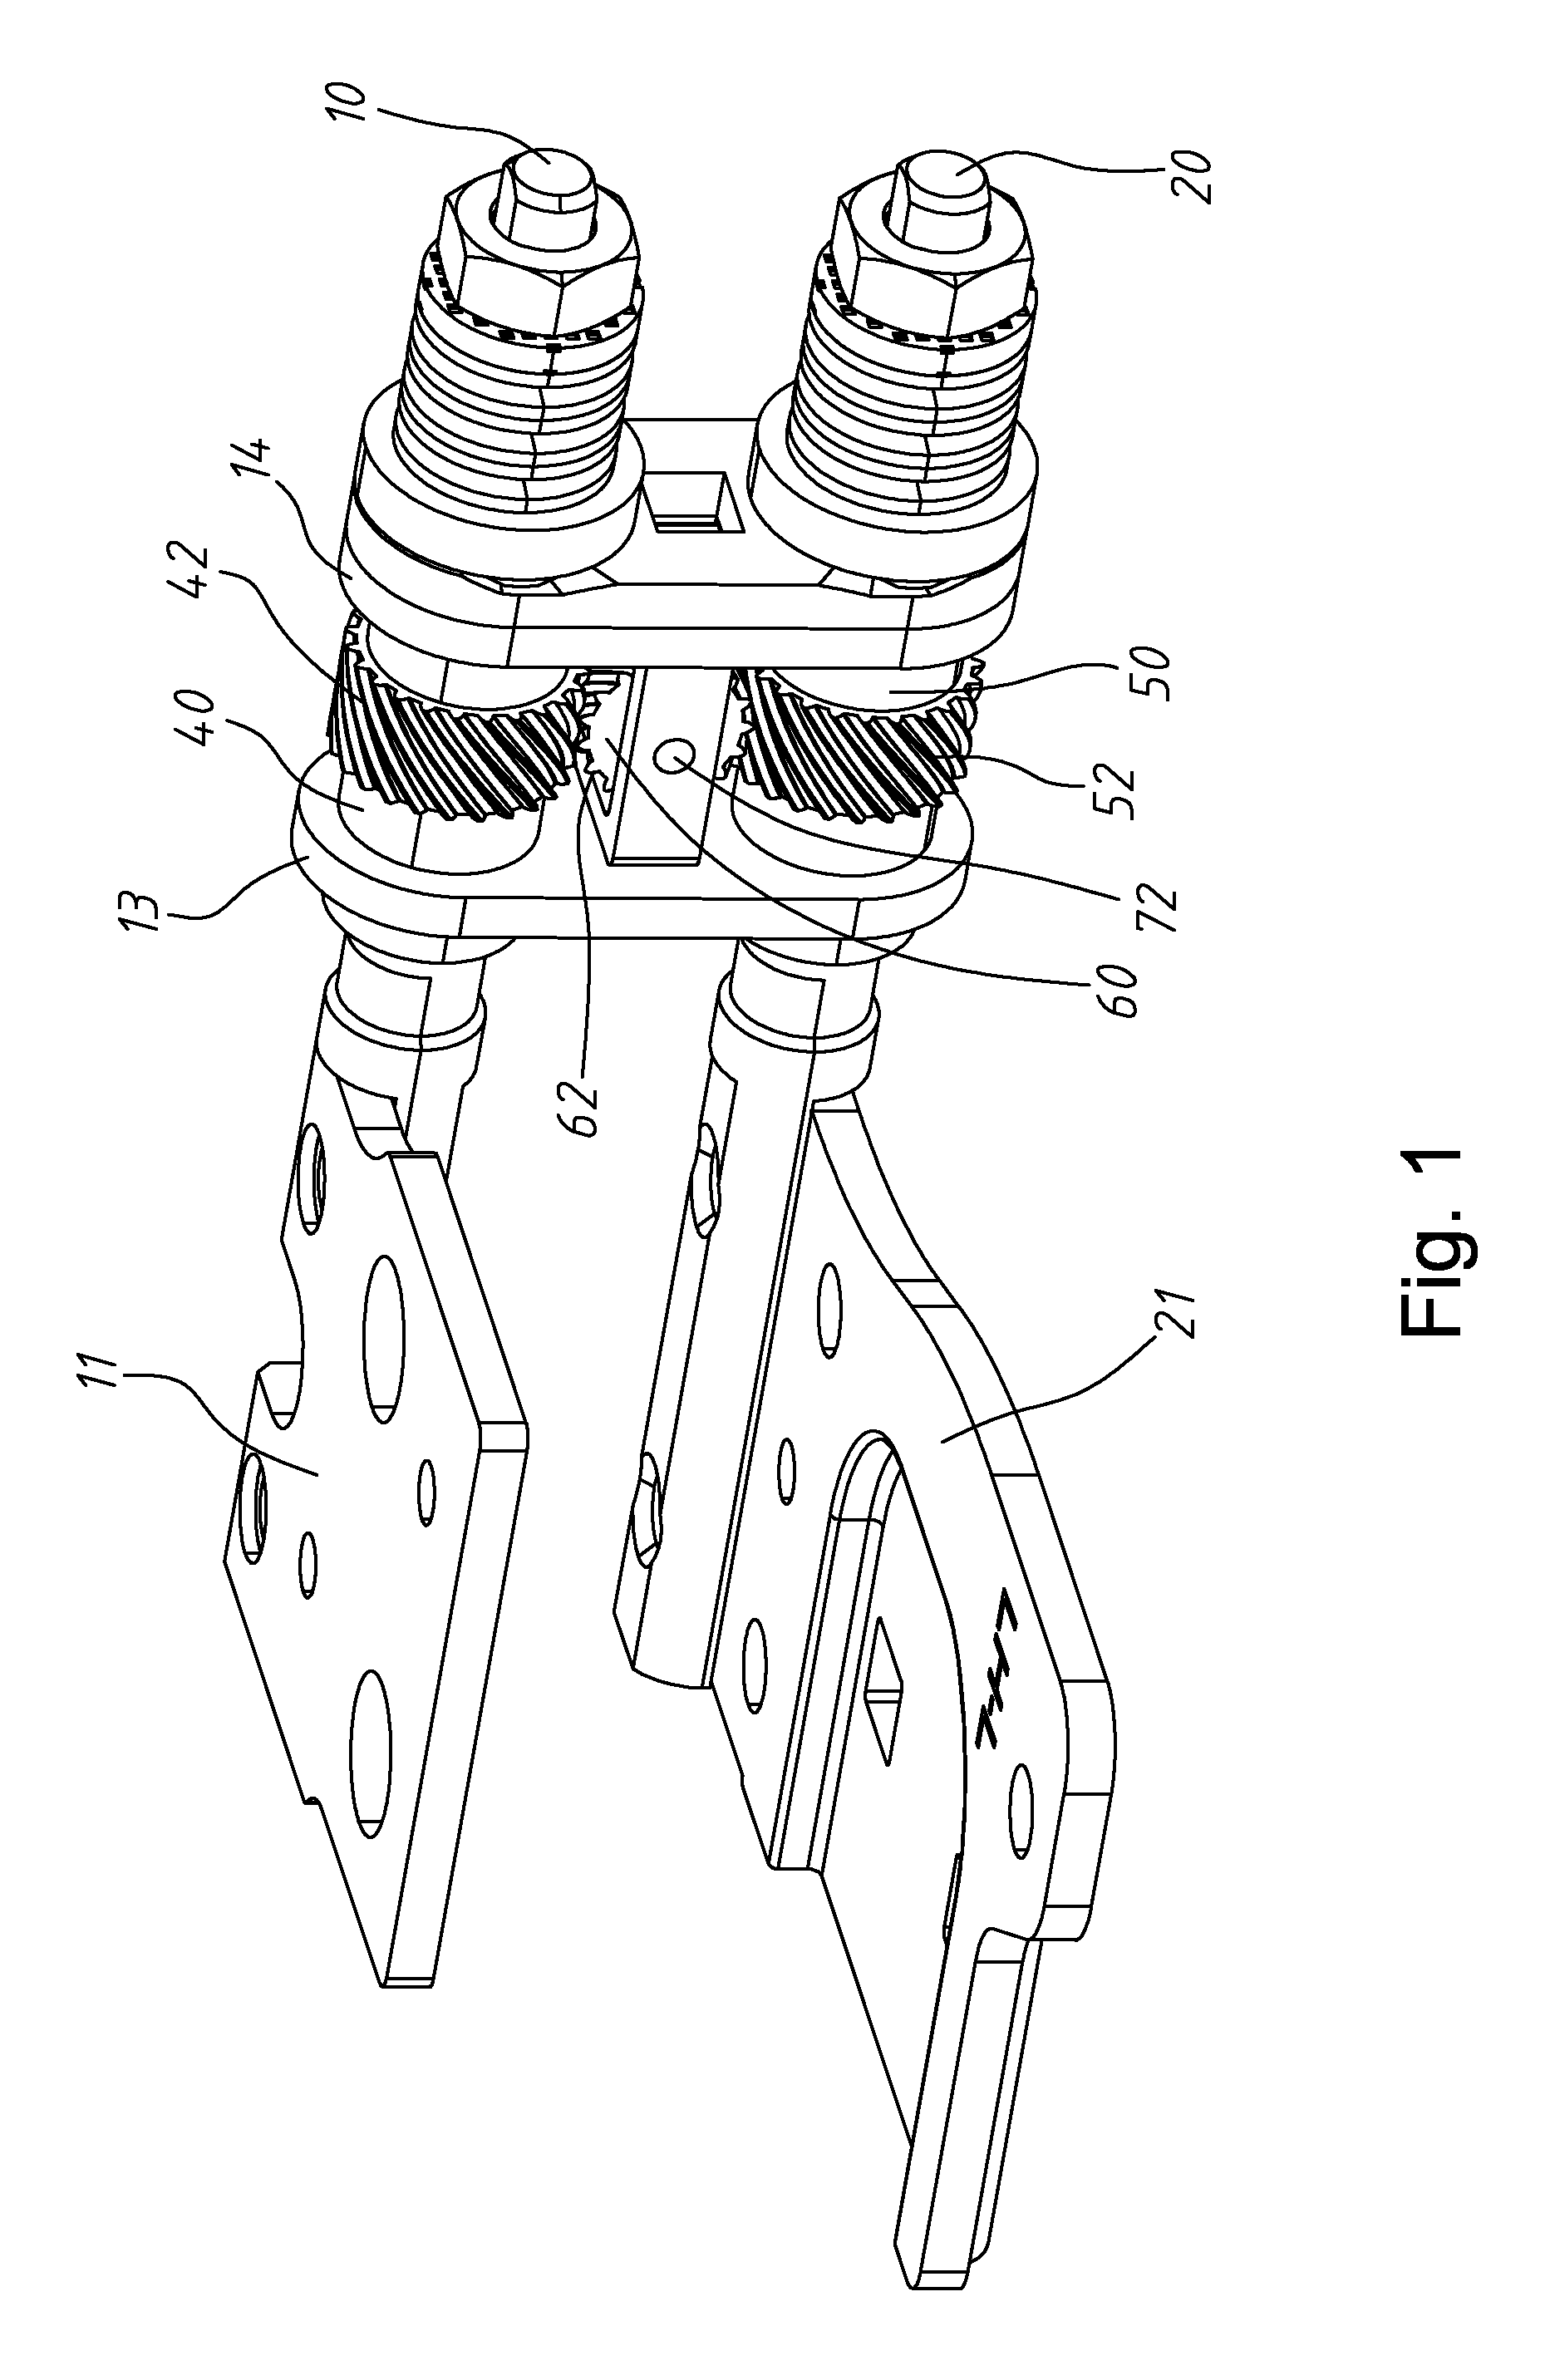 Transmission mechanism for dual-shaft hinge